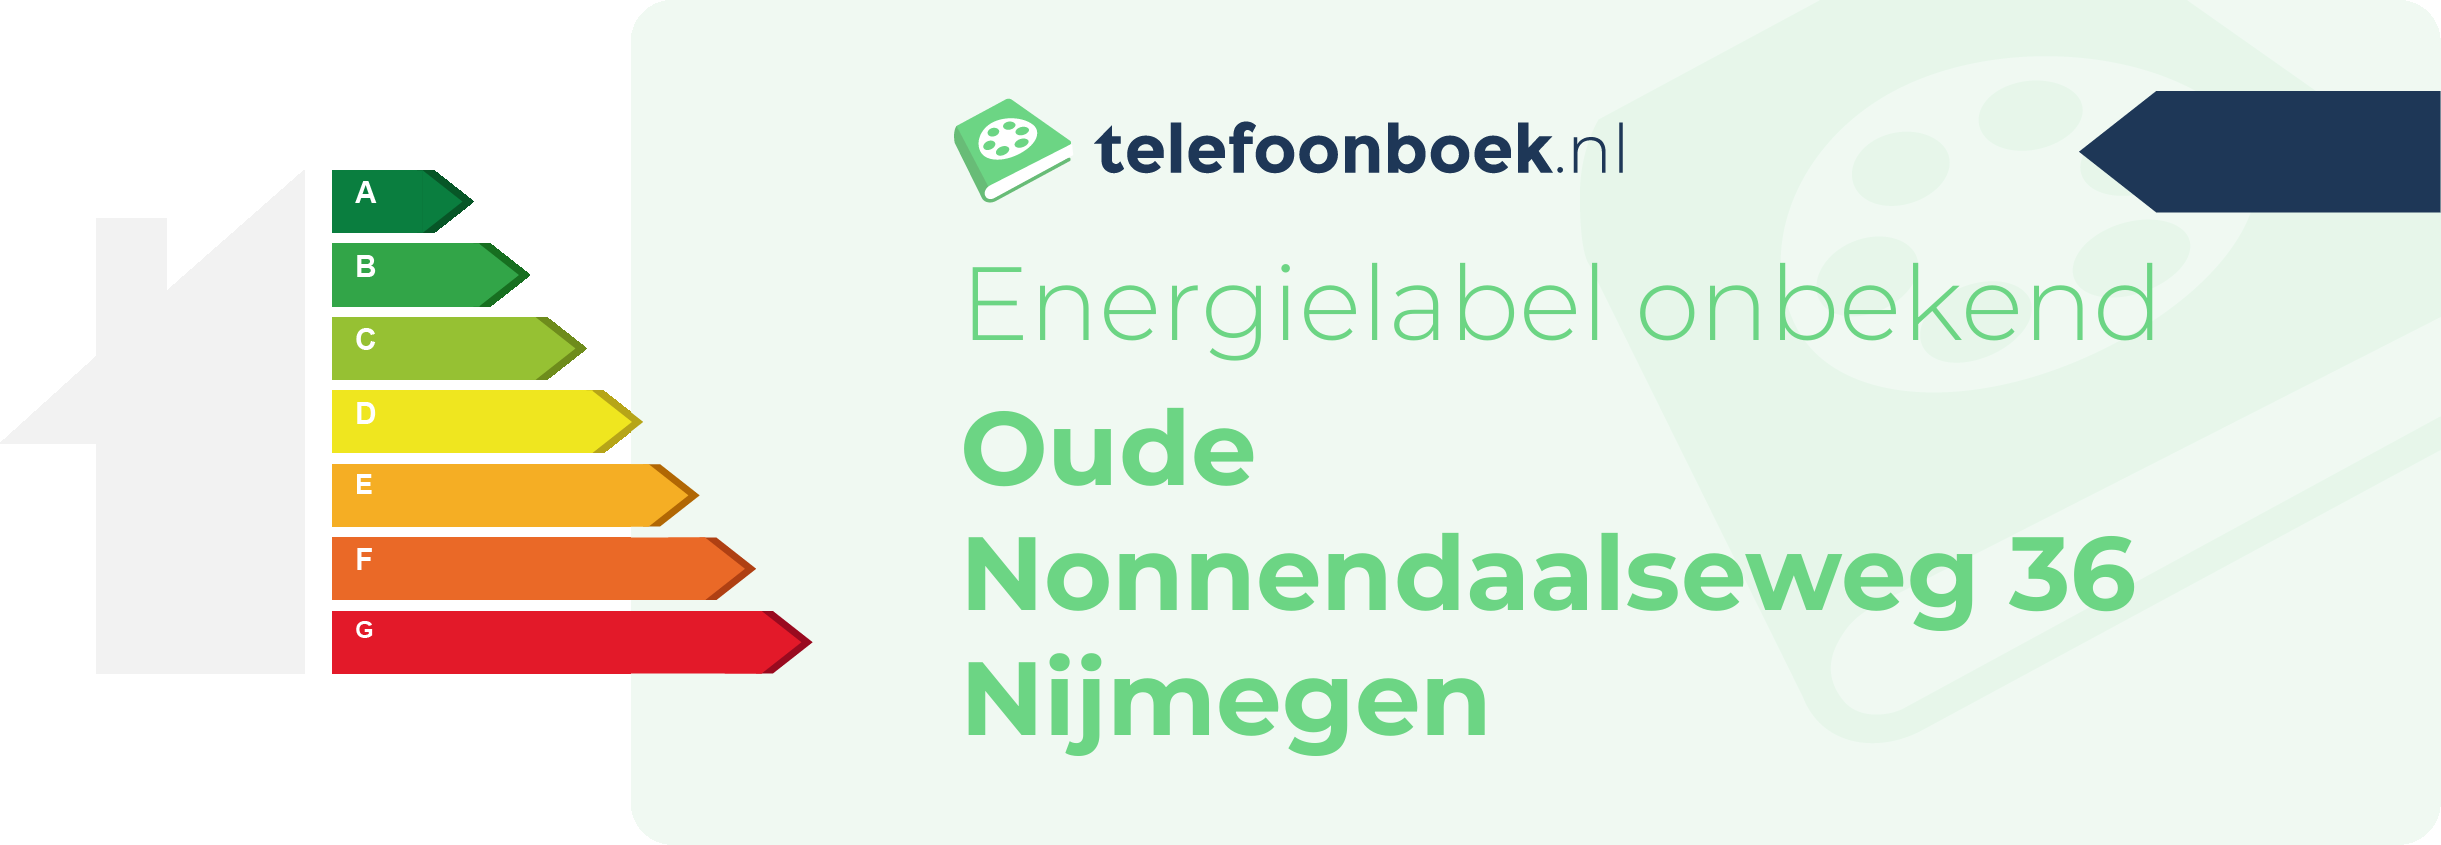 Energielabel Oude Nonnendaalseweg 36 Nijmegen